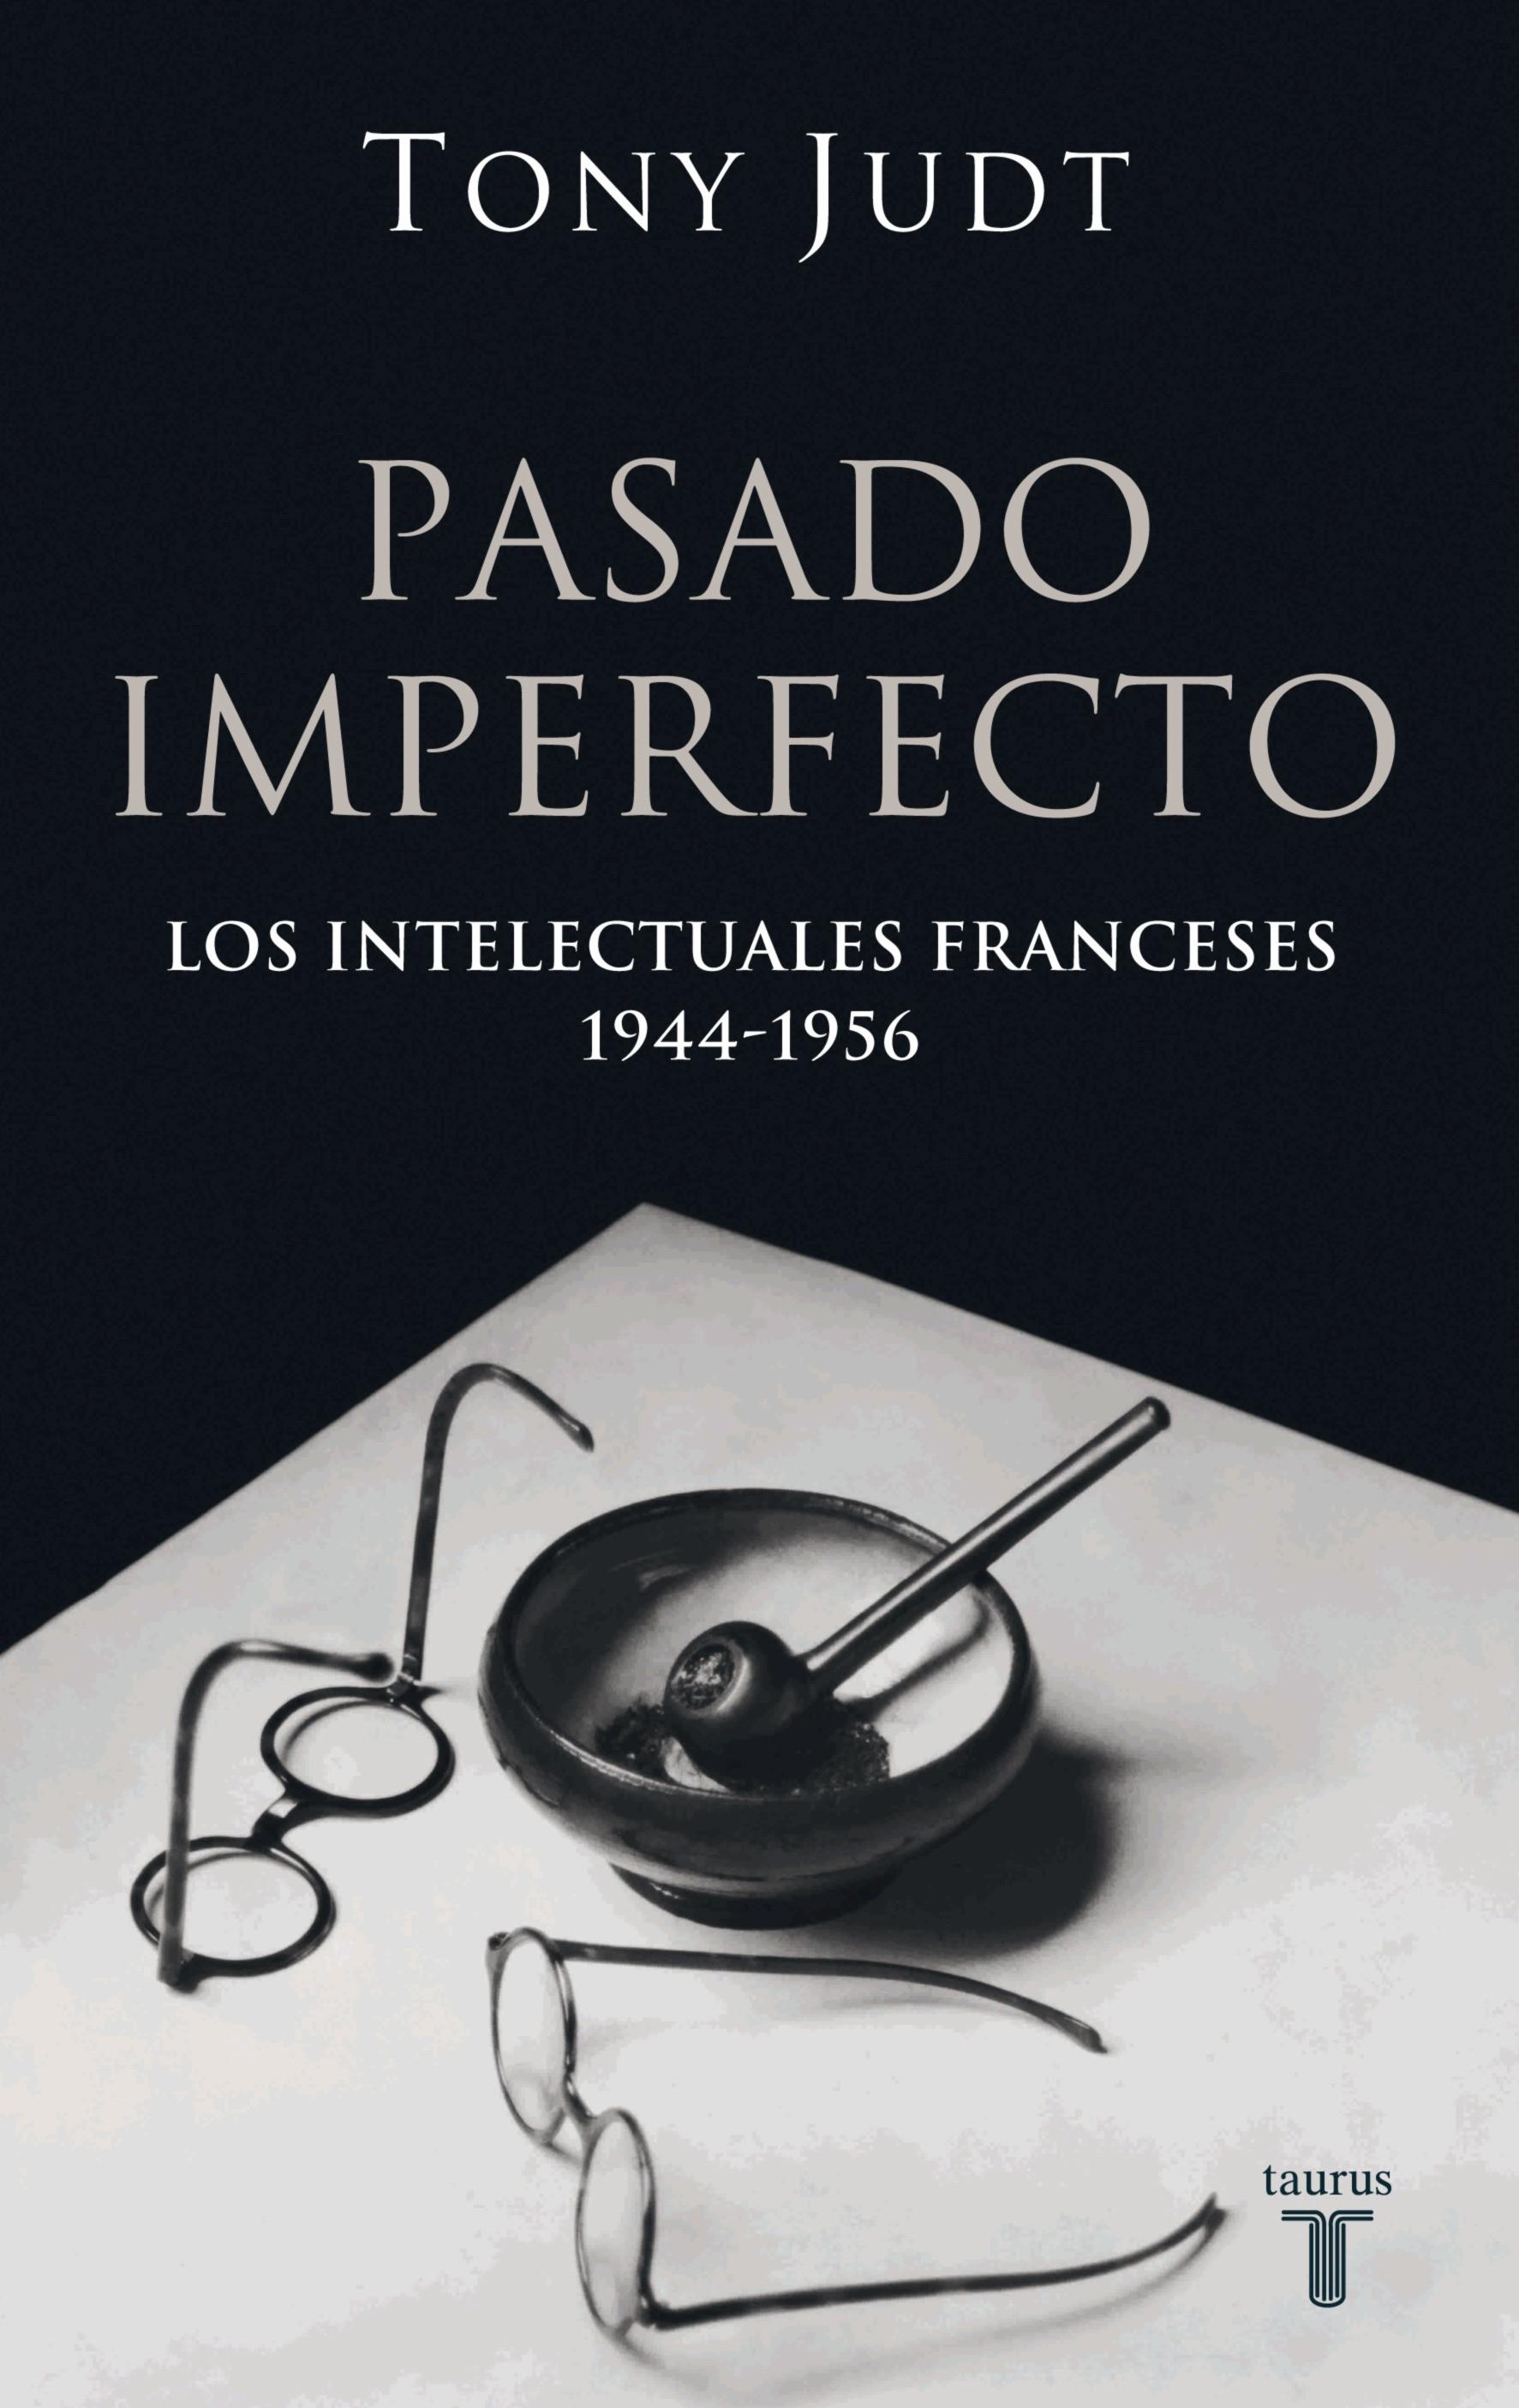 Pasado imperfecto "Los intelectuales franceses 1944-1956". 